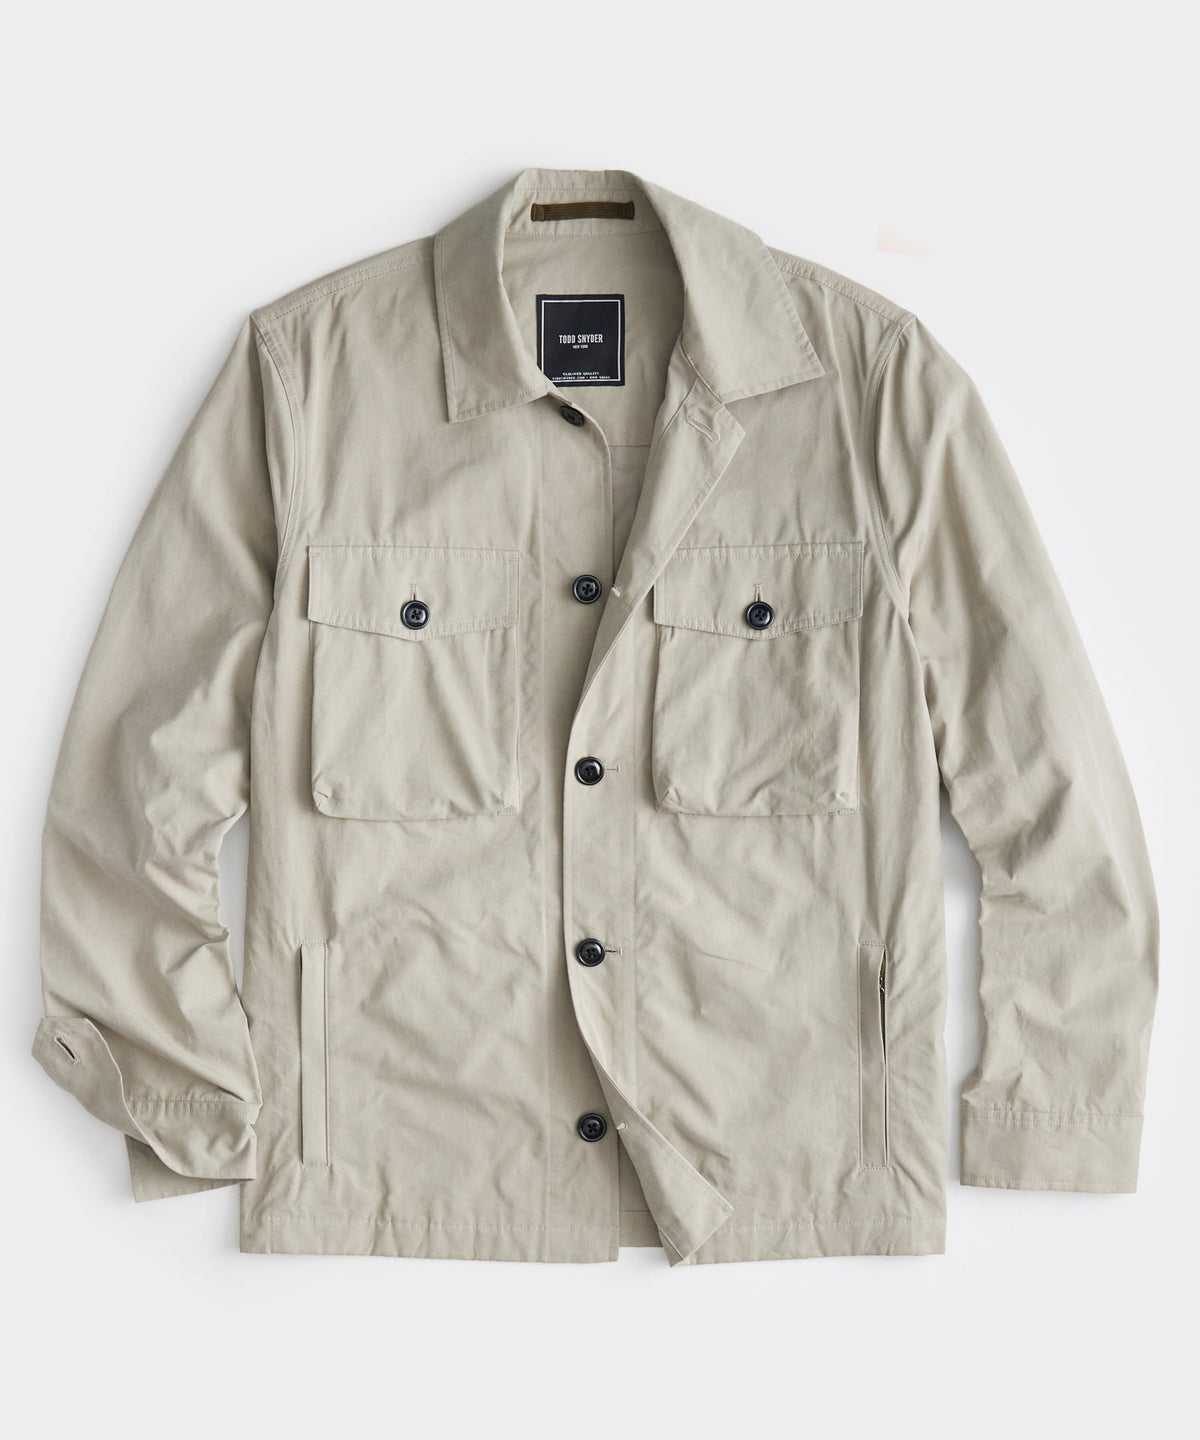 Cotton Nylon CPO Jacket in Stone